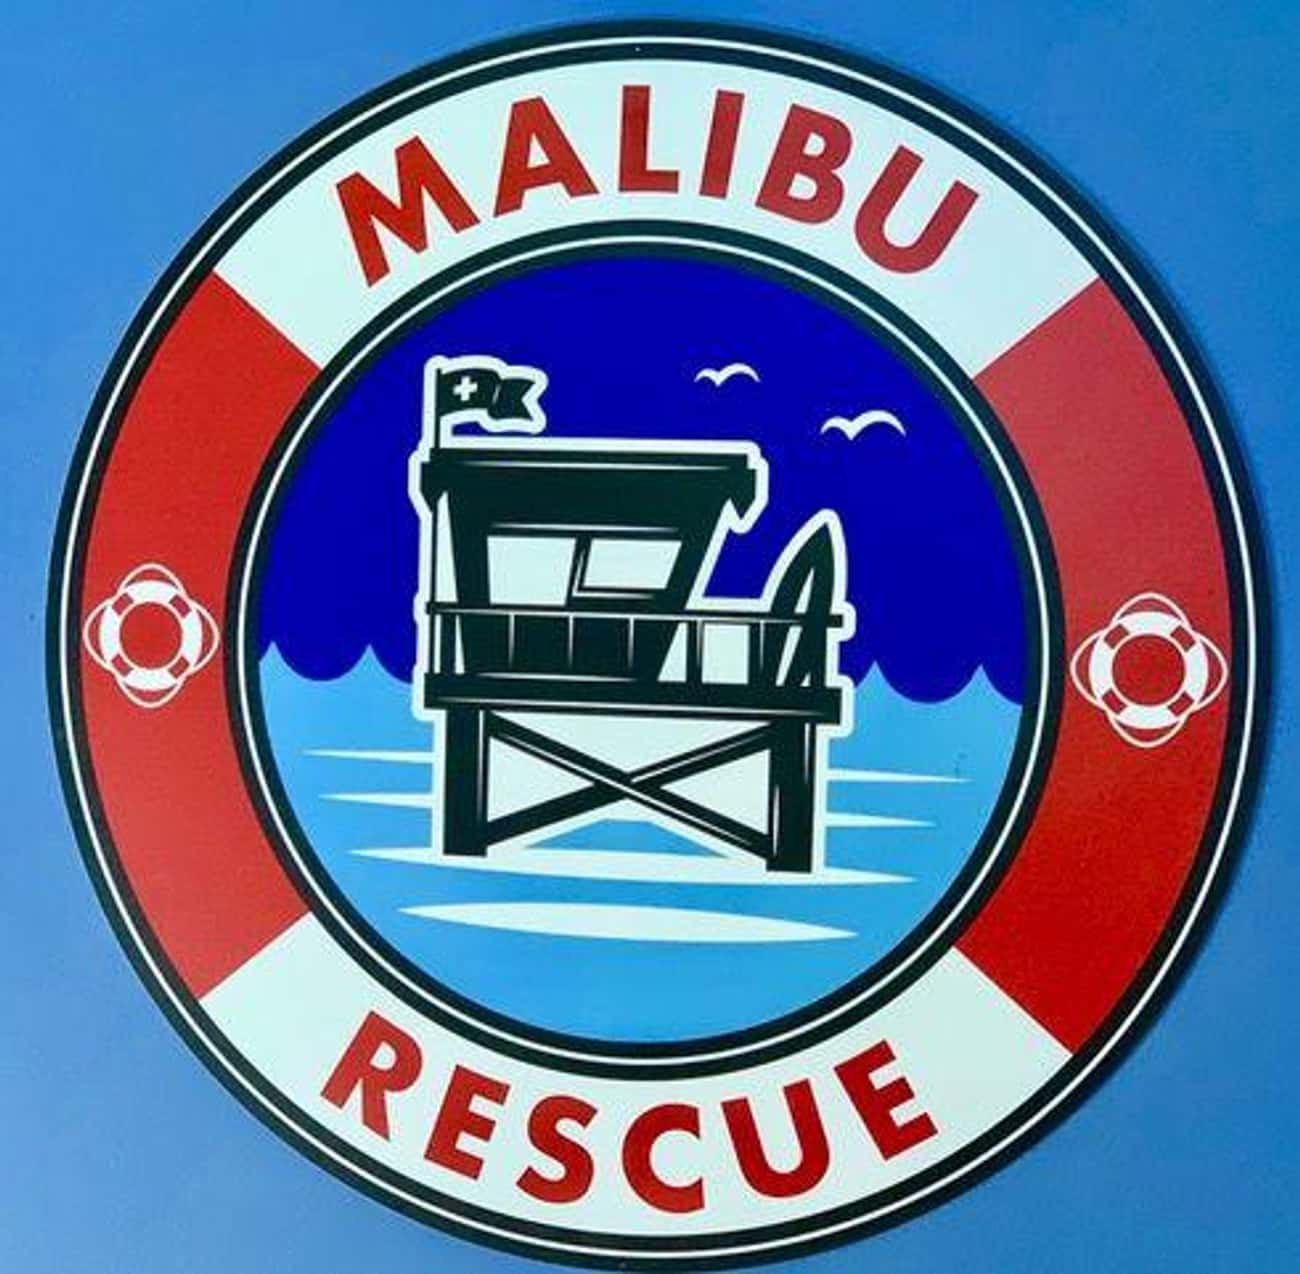 Malibu Rescue: The Movie